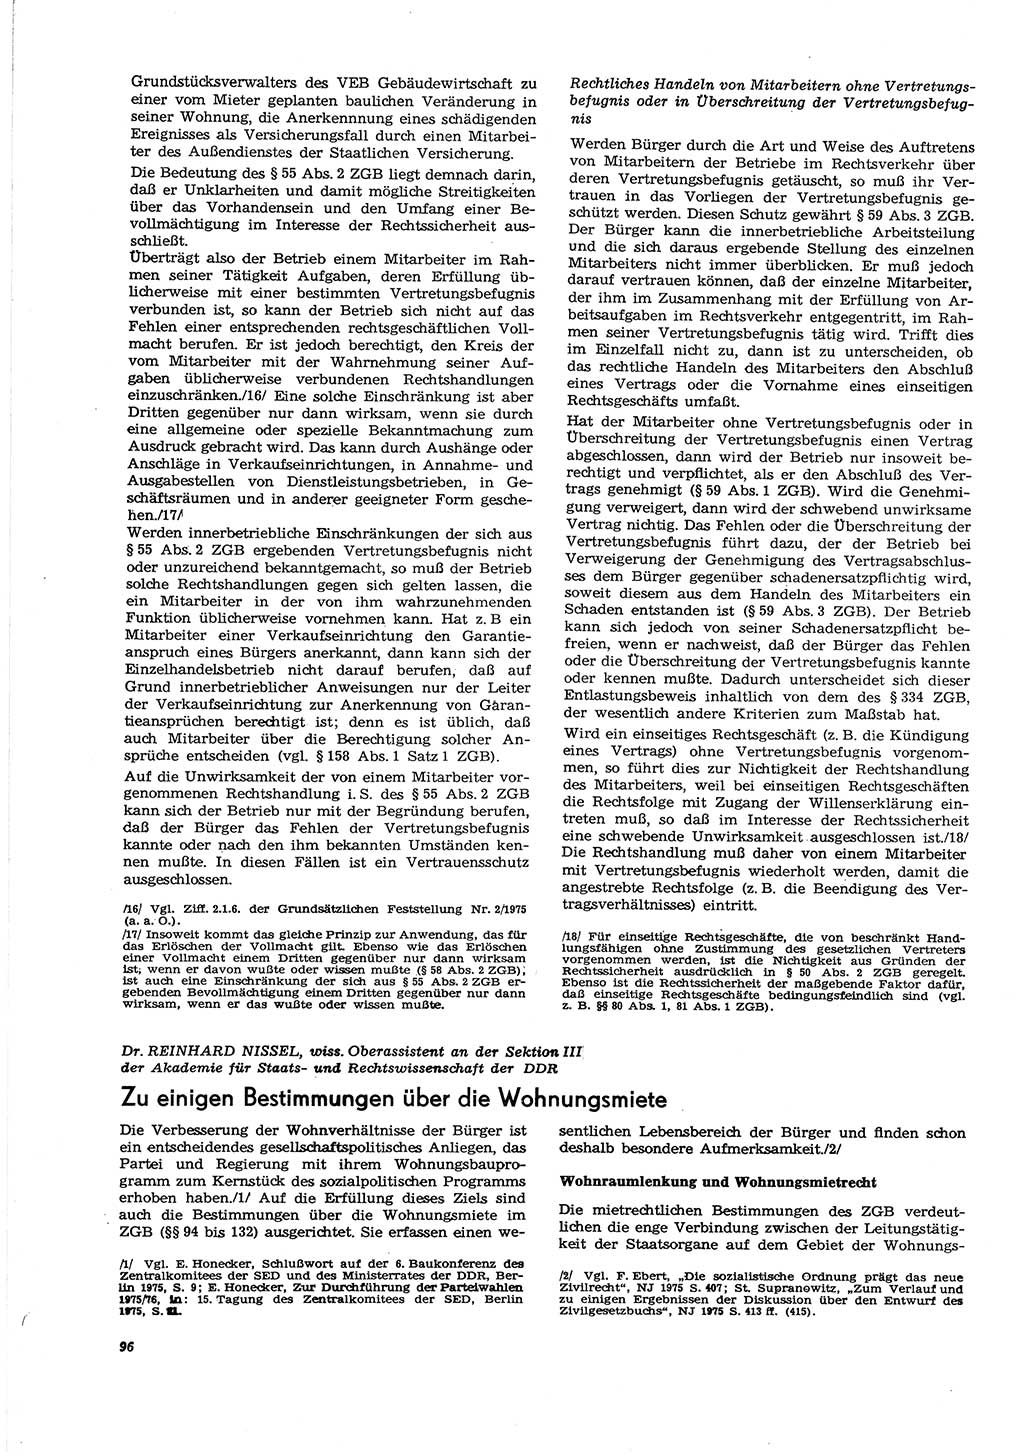 Neue Justiz (NJ), Zeitschrift für Recht und Rechtswissenschaft [Deutsche Demokratische Republik (DDR)], 30. Jahrgang 1976, Seite 96 (NJ DDR 1976, S. 96)